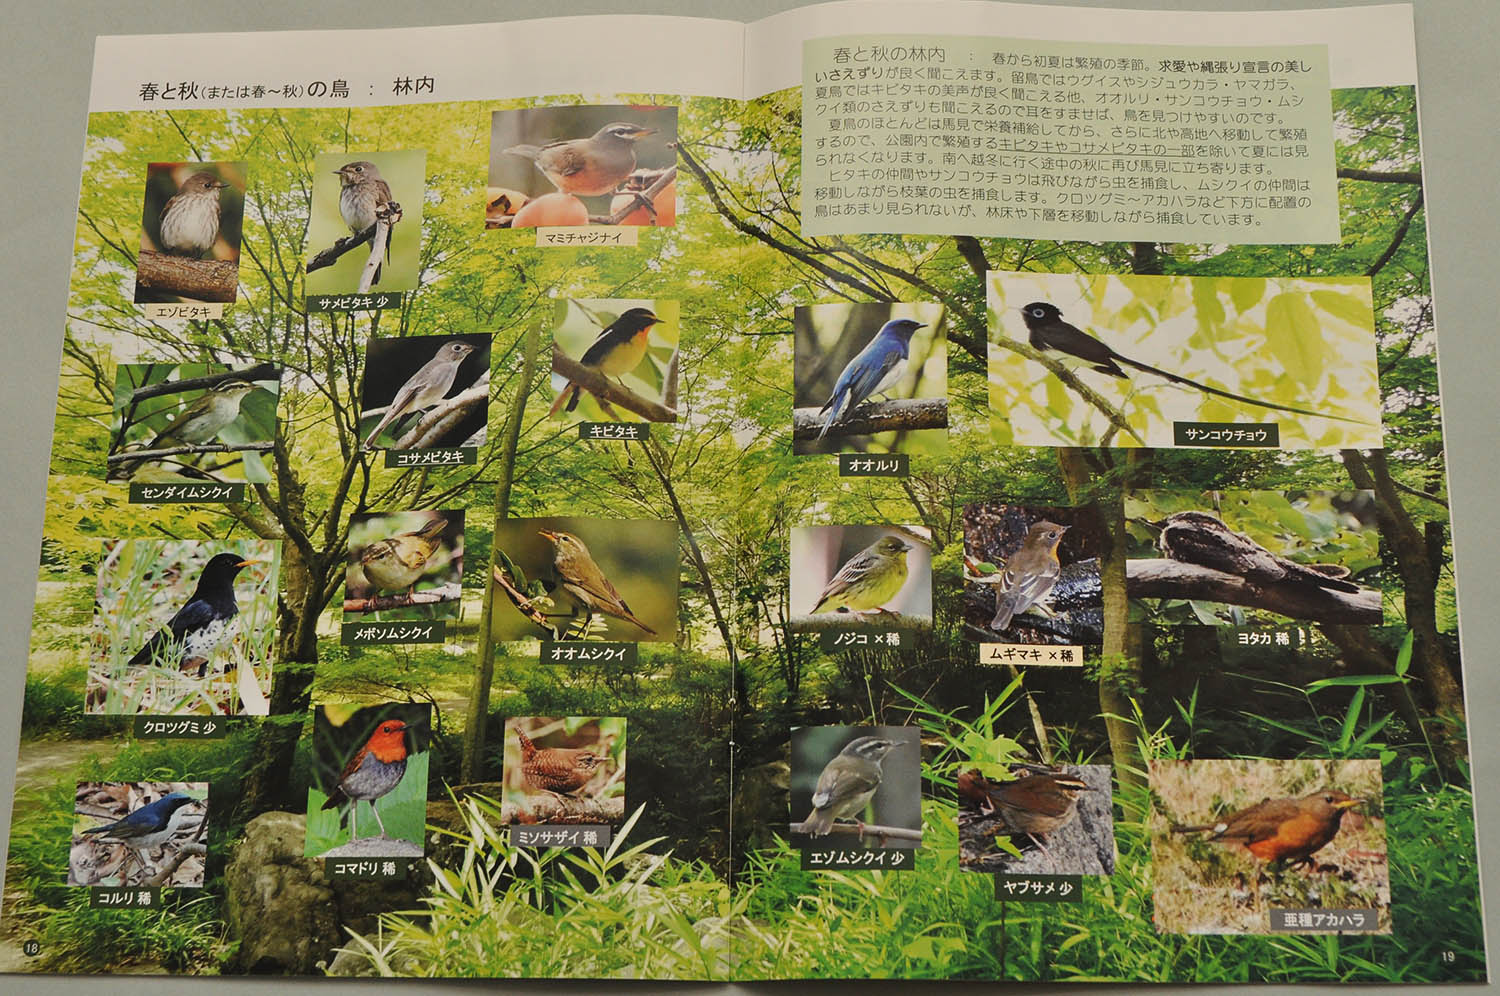 馬見丘陵公園で見られる野鳥の写真集（2021年12月「野鳥にやさしい馬見丘陵公園をめざす会」発行）